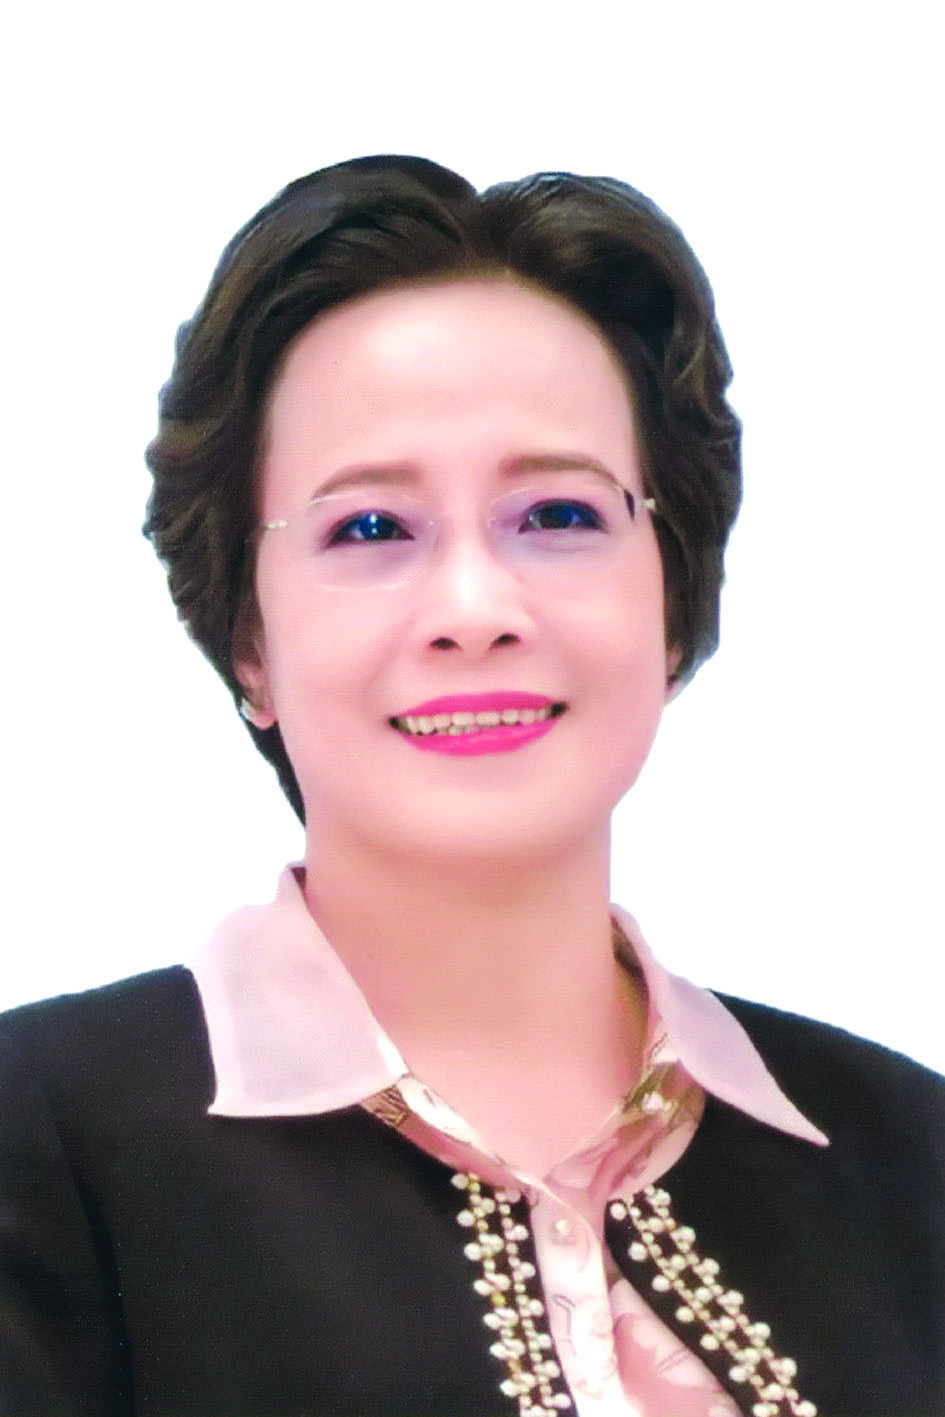 Bà Nguyễn Thị Lan Hương, Chủ tịch Hội đồng quản trị Công ty Cổ phần sản xuất và xuất nhập khẩu Việt Phúc.